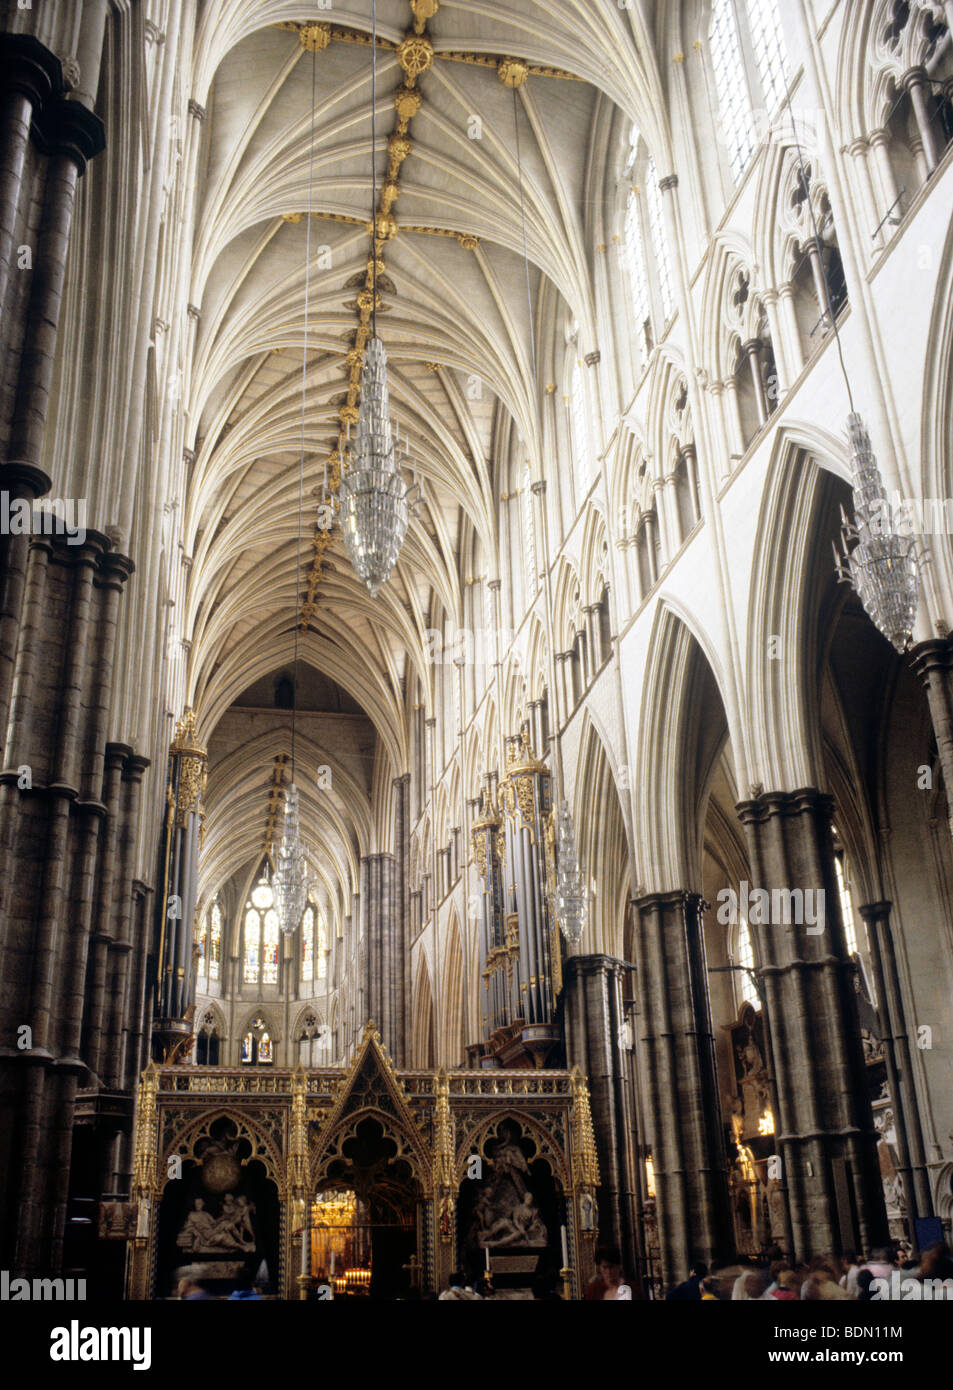 Westminster Abbey inneren Kirchenschiff Gewölbe Dach englischen gotischen Architektur London England UK Arcade-Arkaden arcading Voltigieren Stockfoto